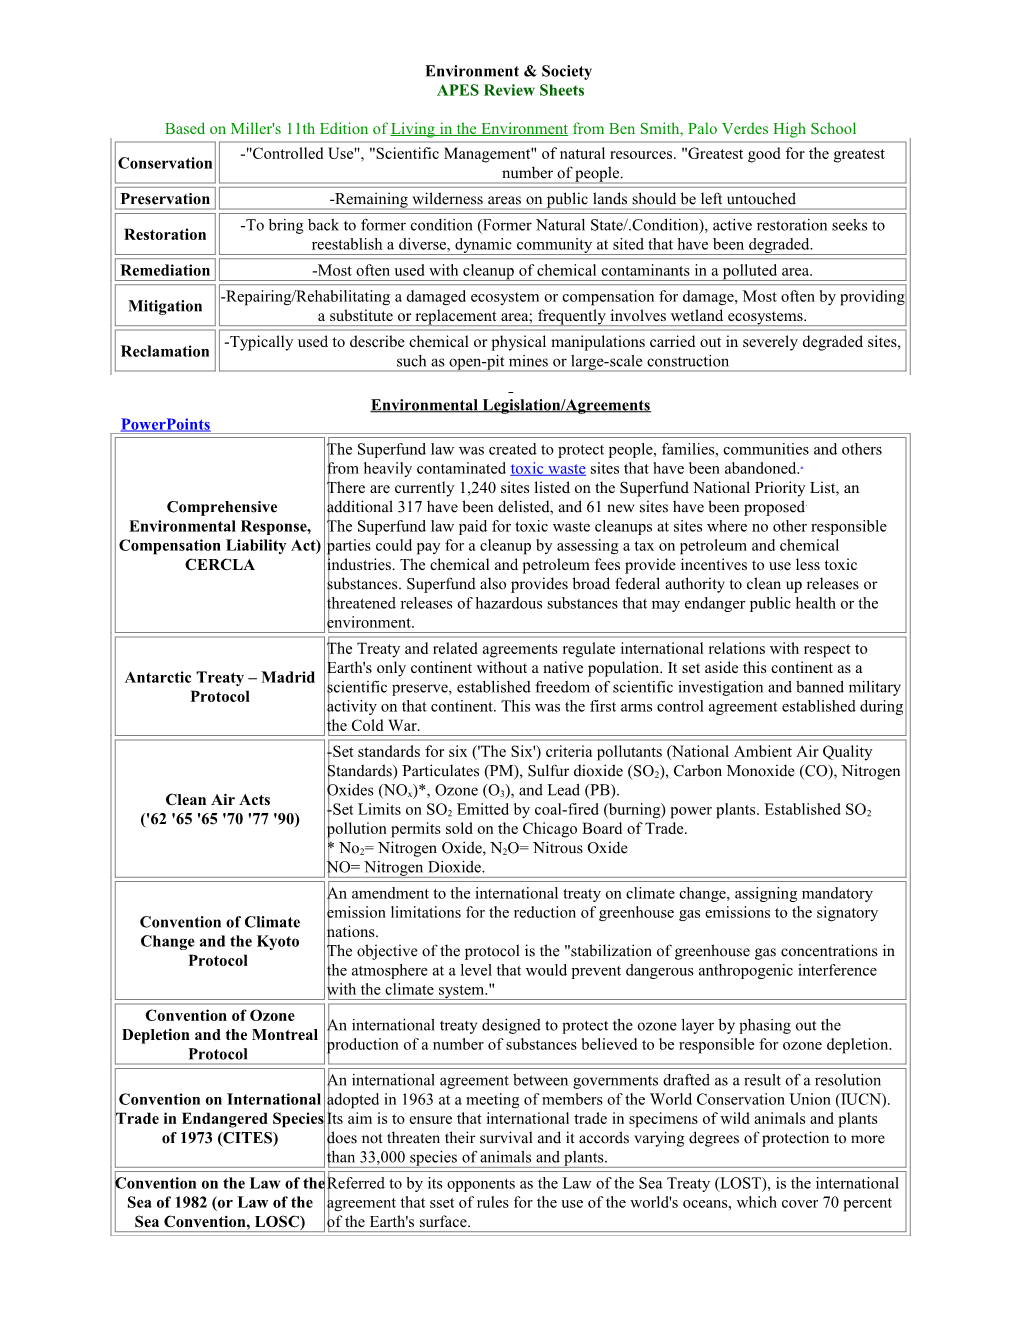 Environment & Society APES Review Sheets